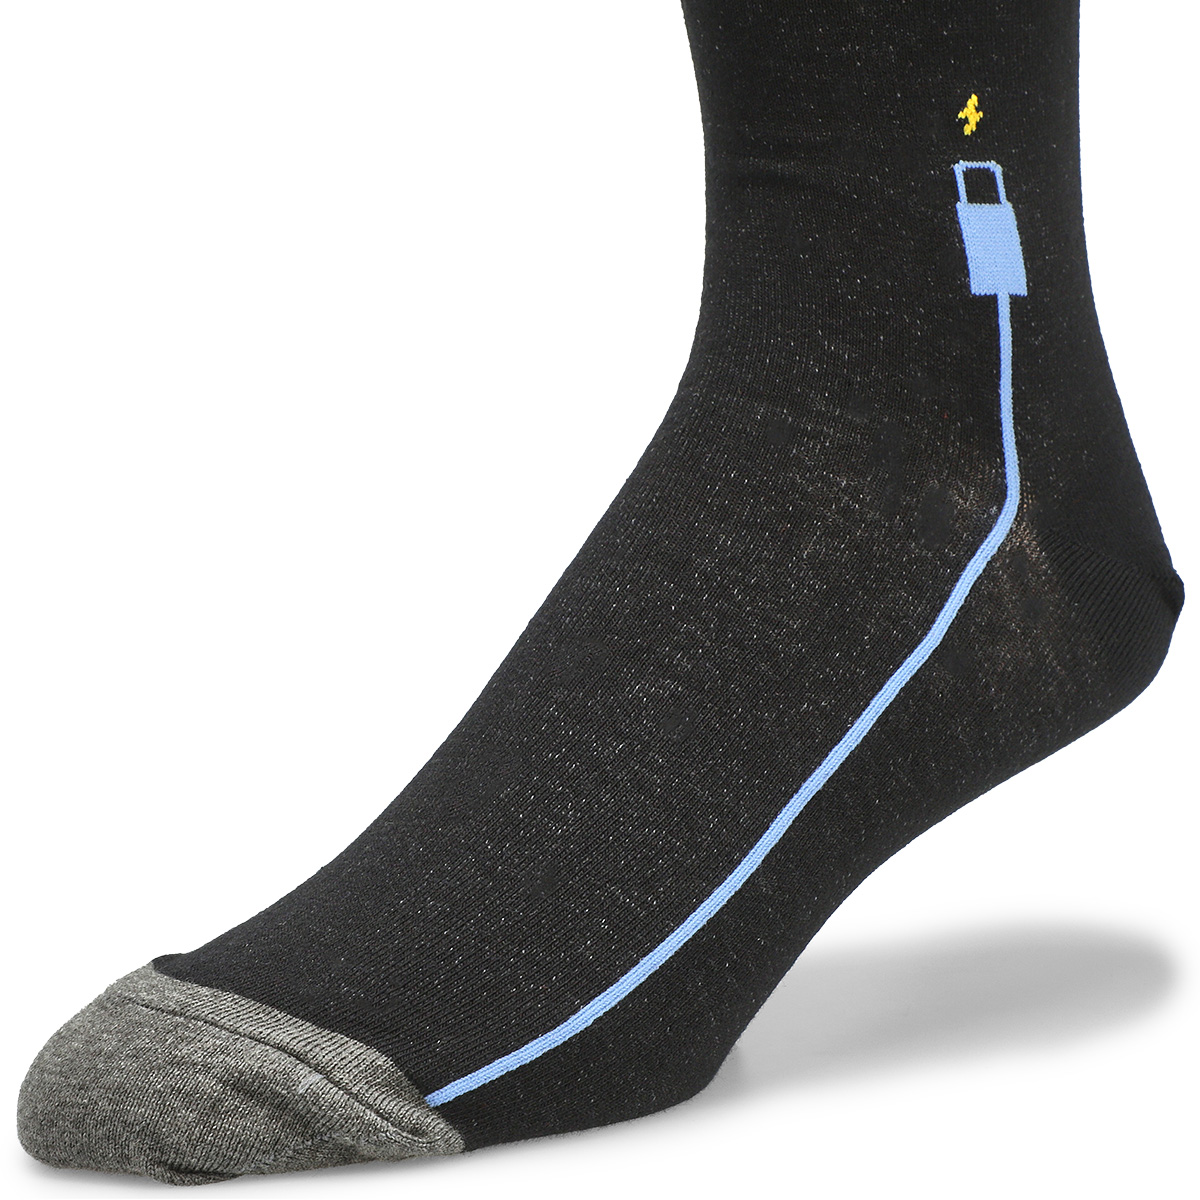 Men's New Dad Printed Sock